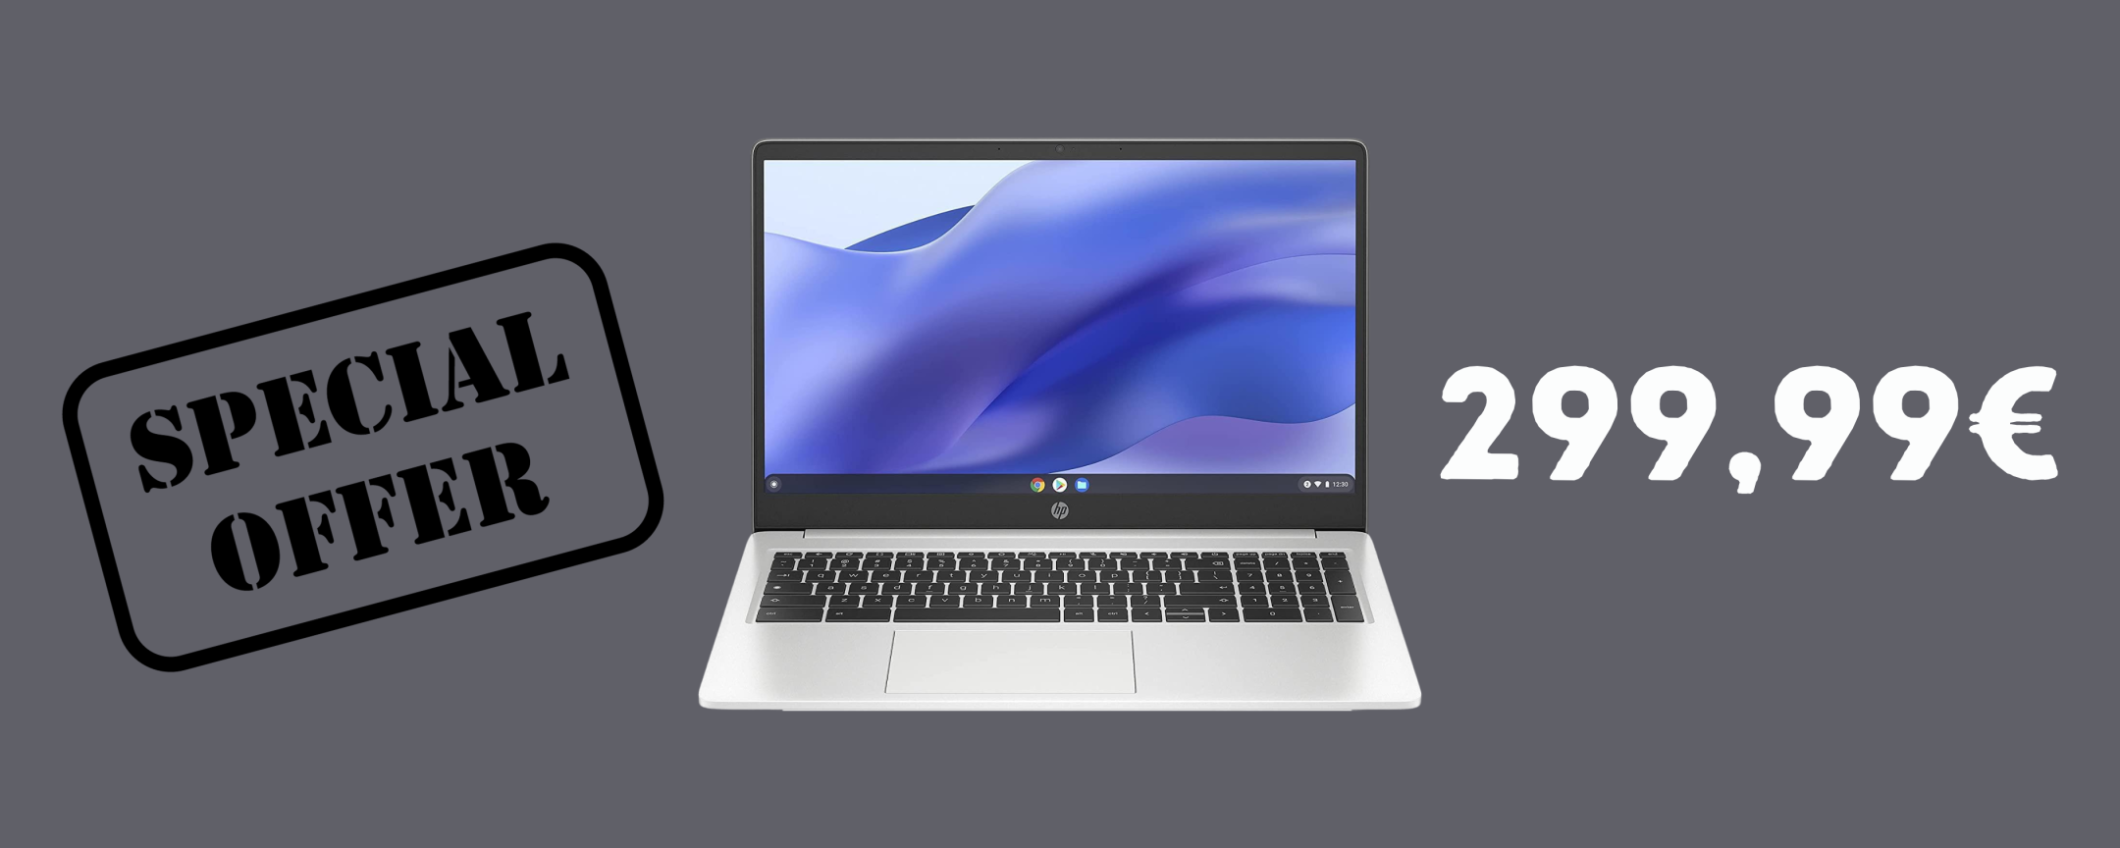 HP Chromebook 15a, ideale per gli studenti, a SOLI 299,99€